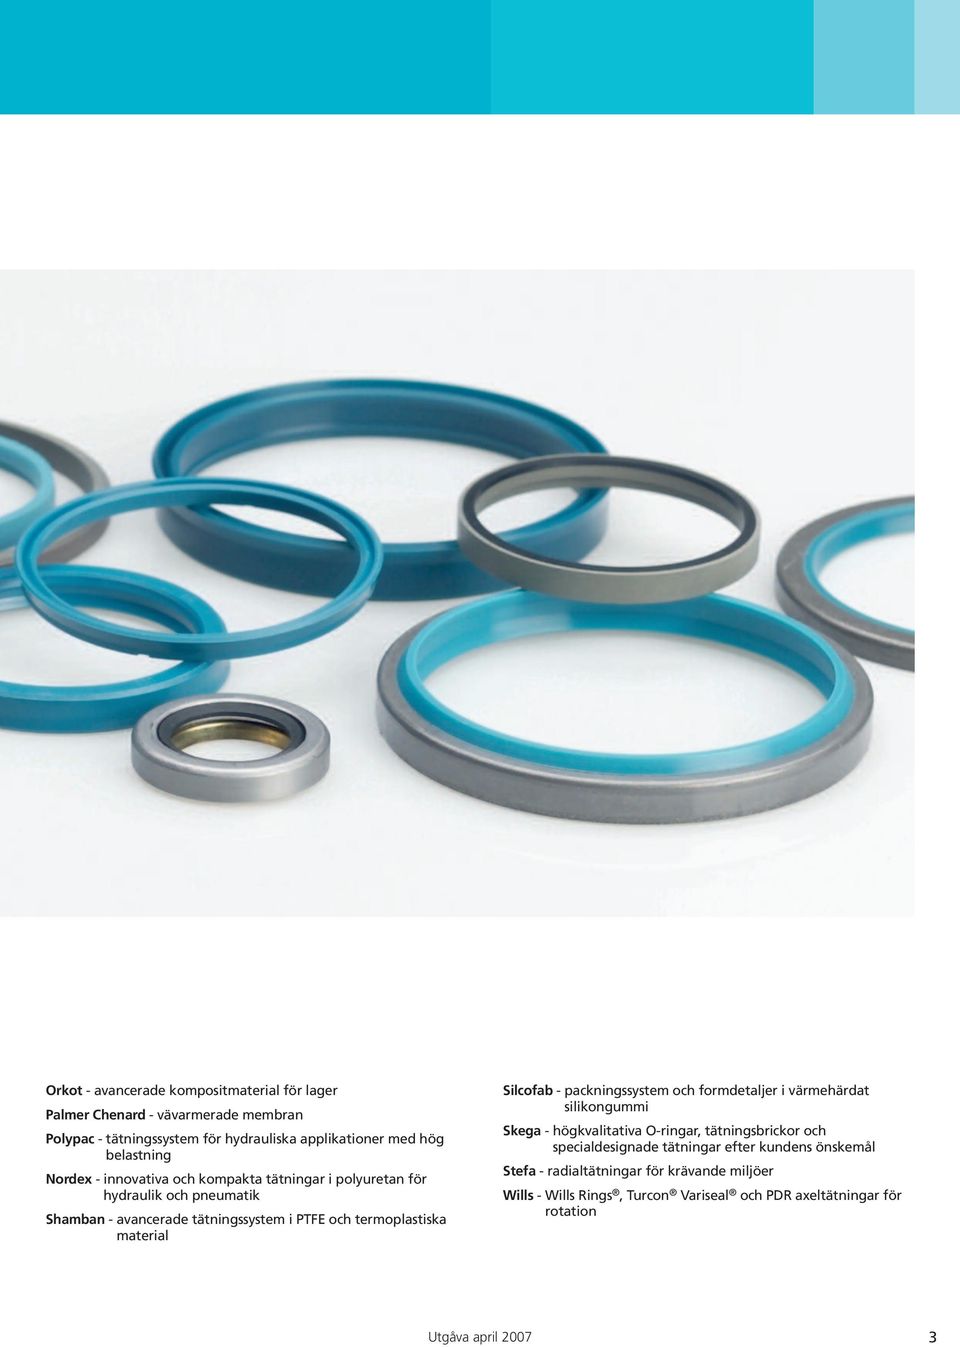 termoplastiska material Silcofab - packningssystem och formdetaljer i värmehärdat silikongummi Skega - högkvalitativa O-ringar, tätningsbrickor och